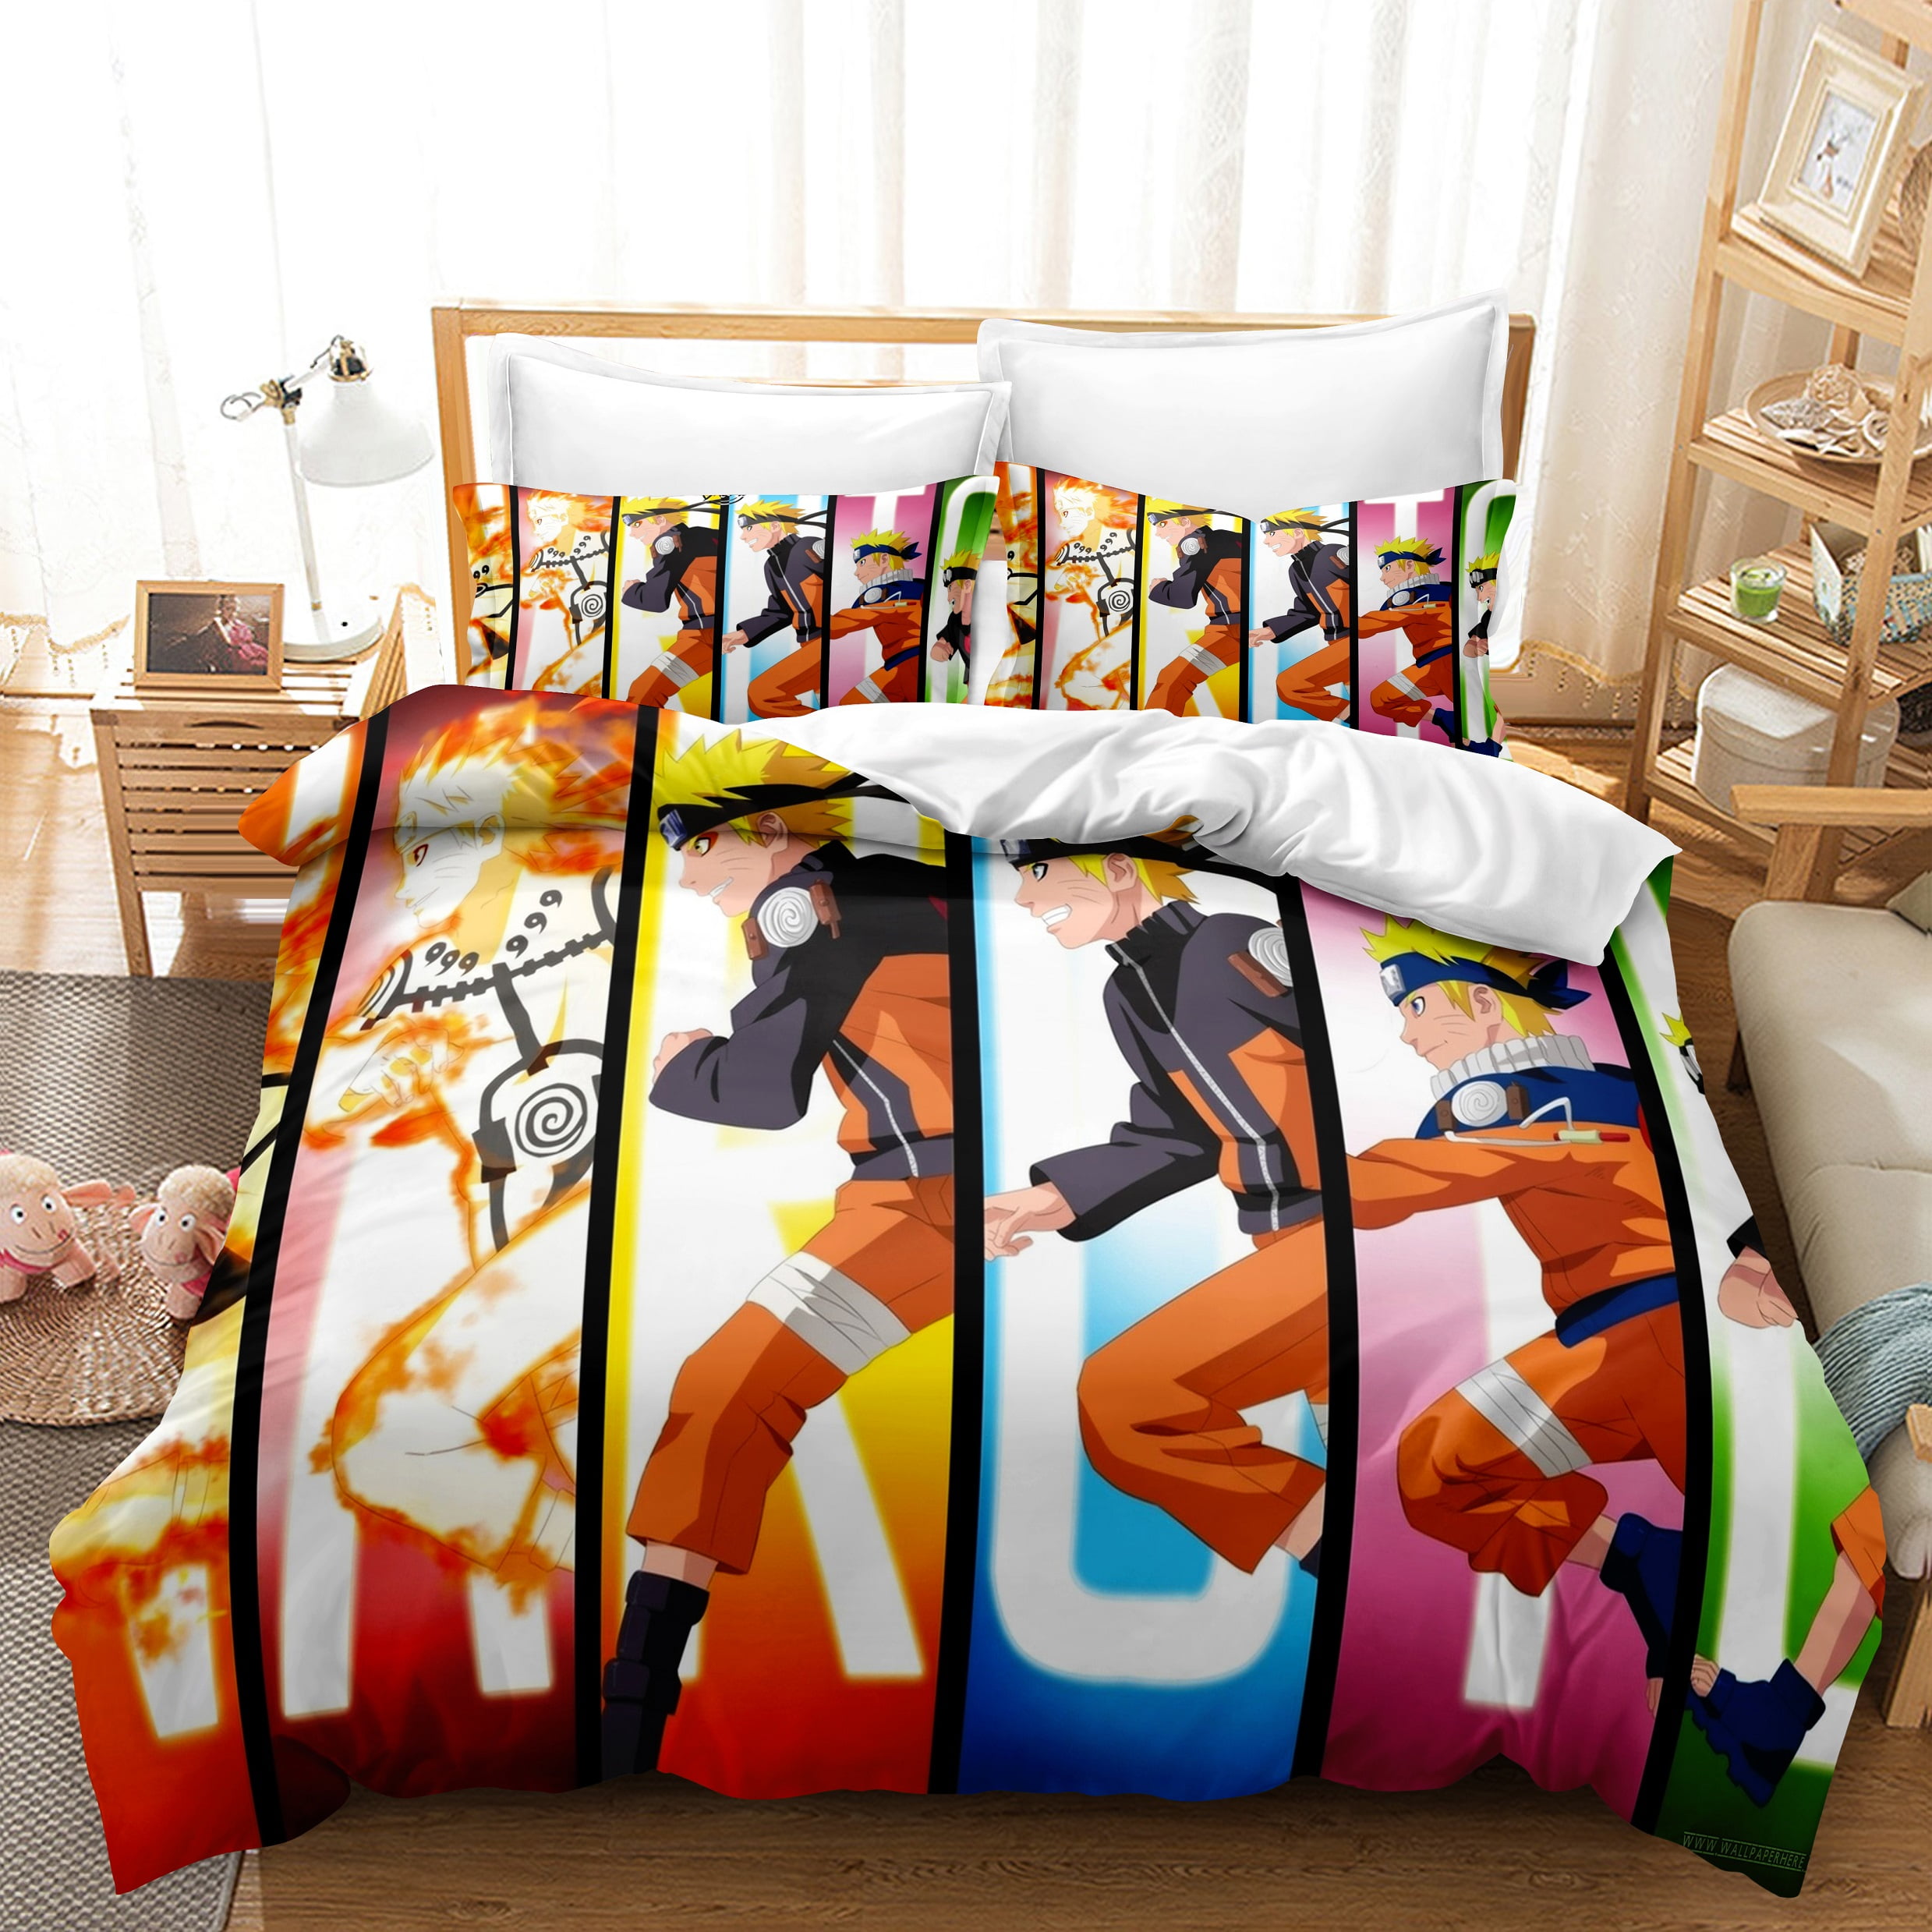 3D Disney Anime Bedding Set Cars Duvet Cover Pillowcase Comforter/Quilt Cover